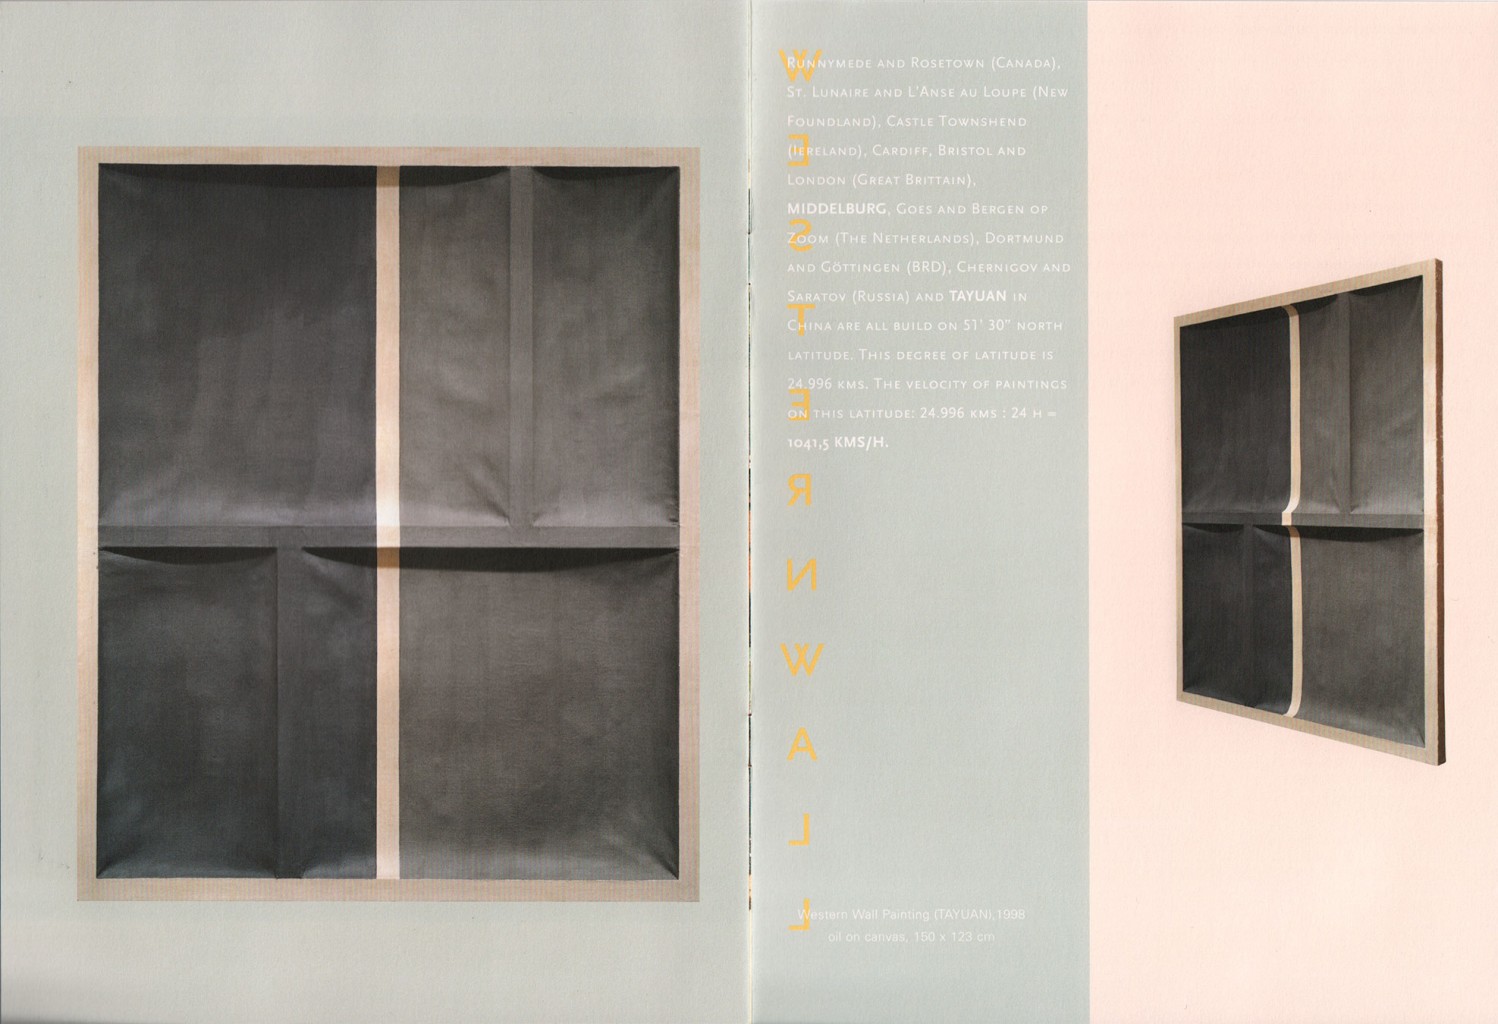 Publicatie 'William Verstraeten', 1999, 8 pages, 26 x 19 cm.